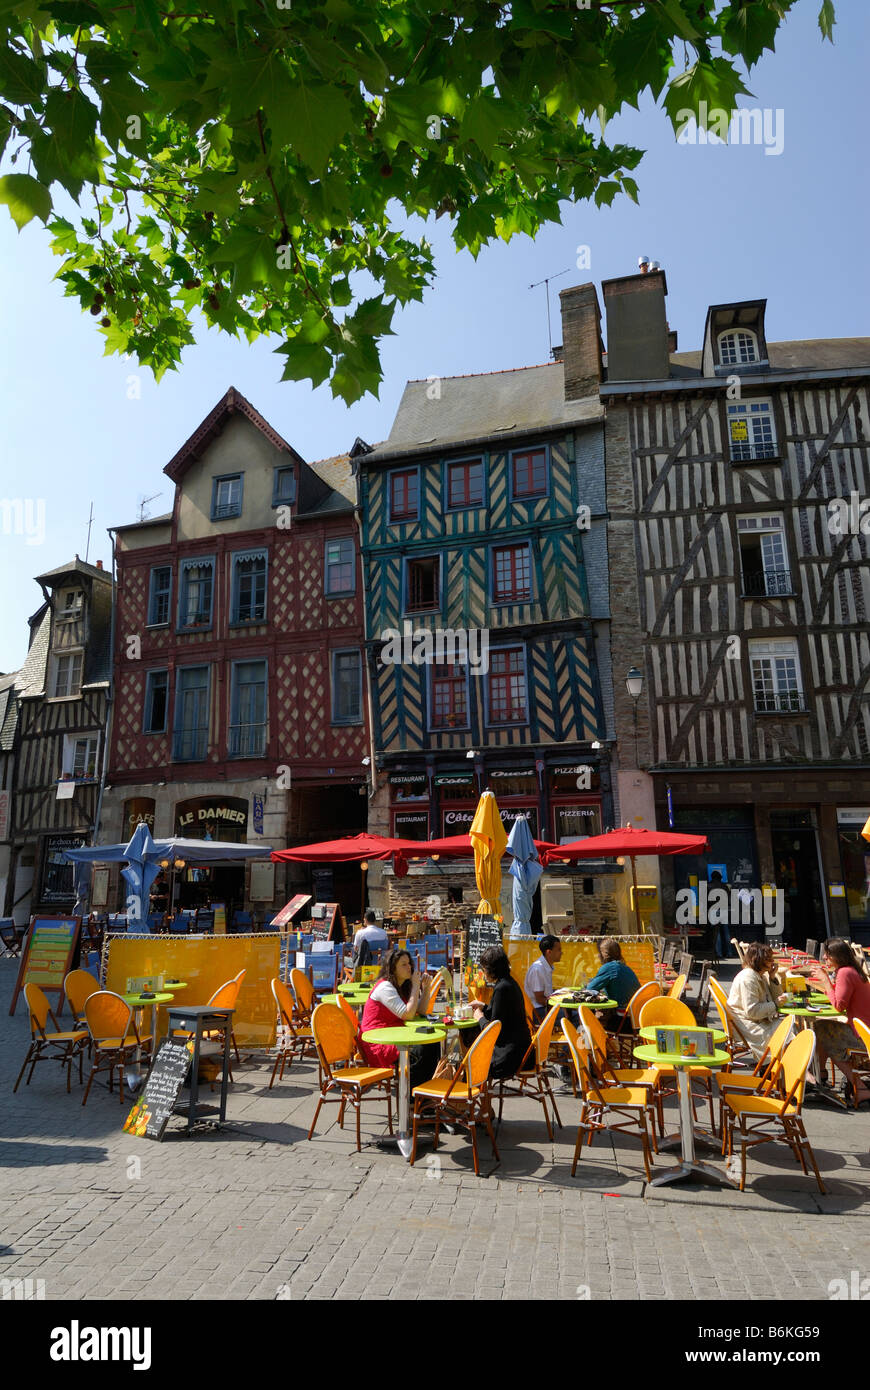 Rennes Bretagne France médiévale colorées à colombages de bâtiments donnant sur cafe tables sur place Sainte Anne Banque D'Images